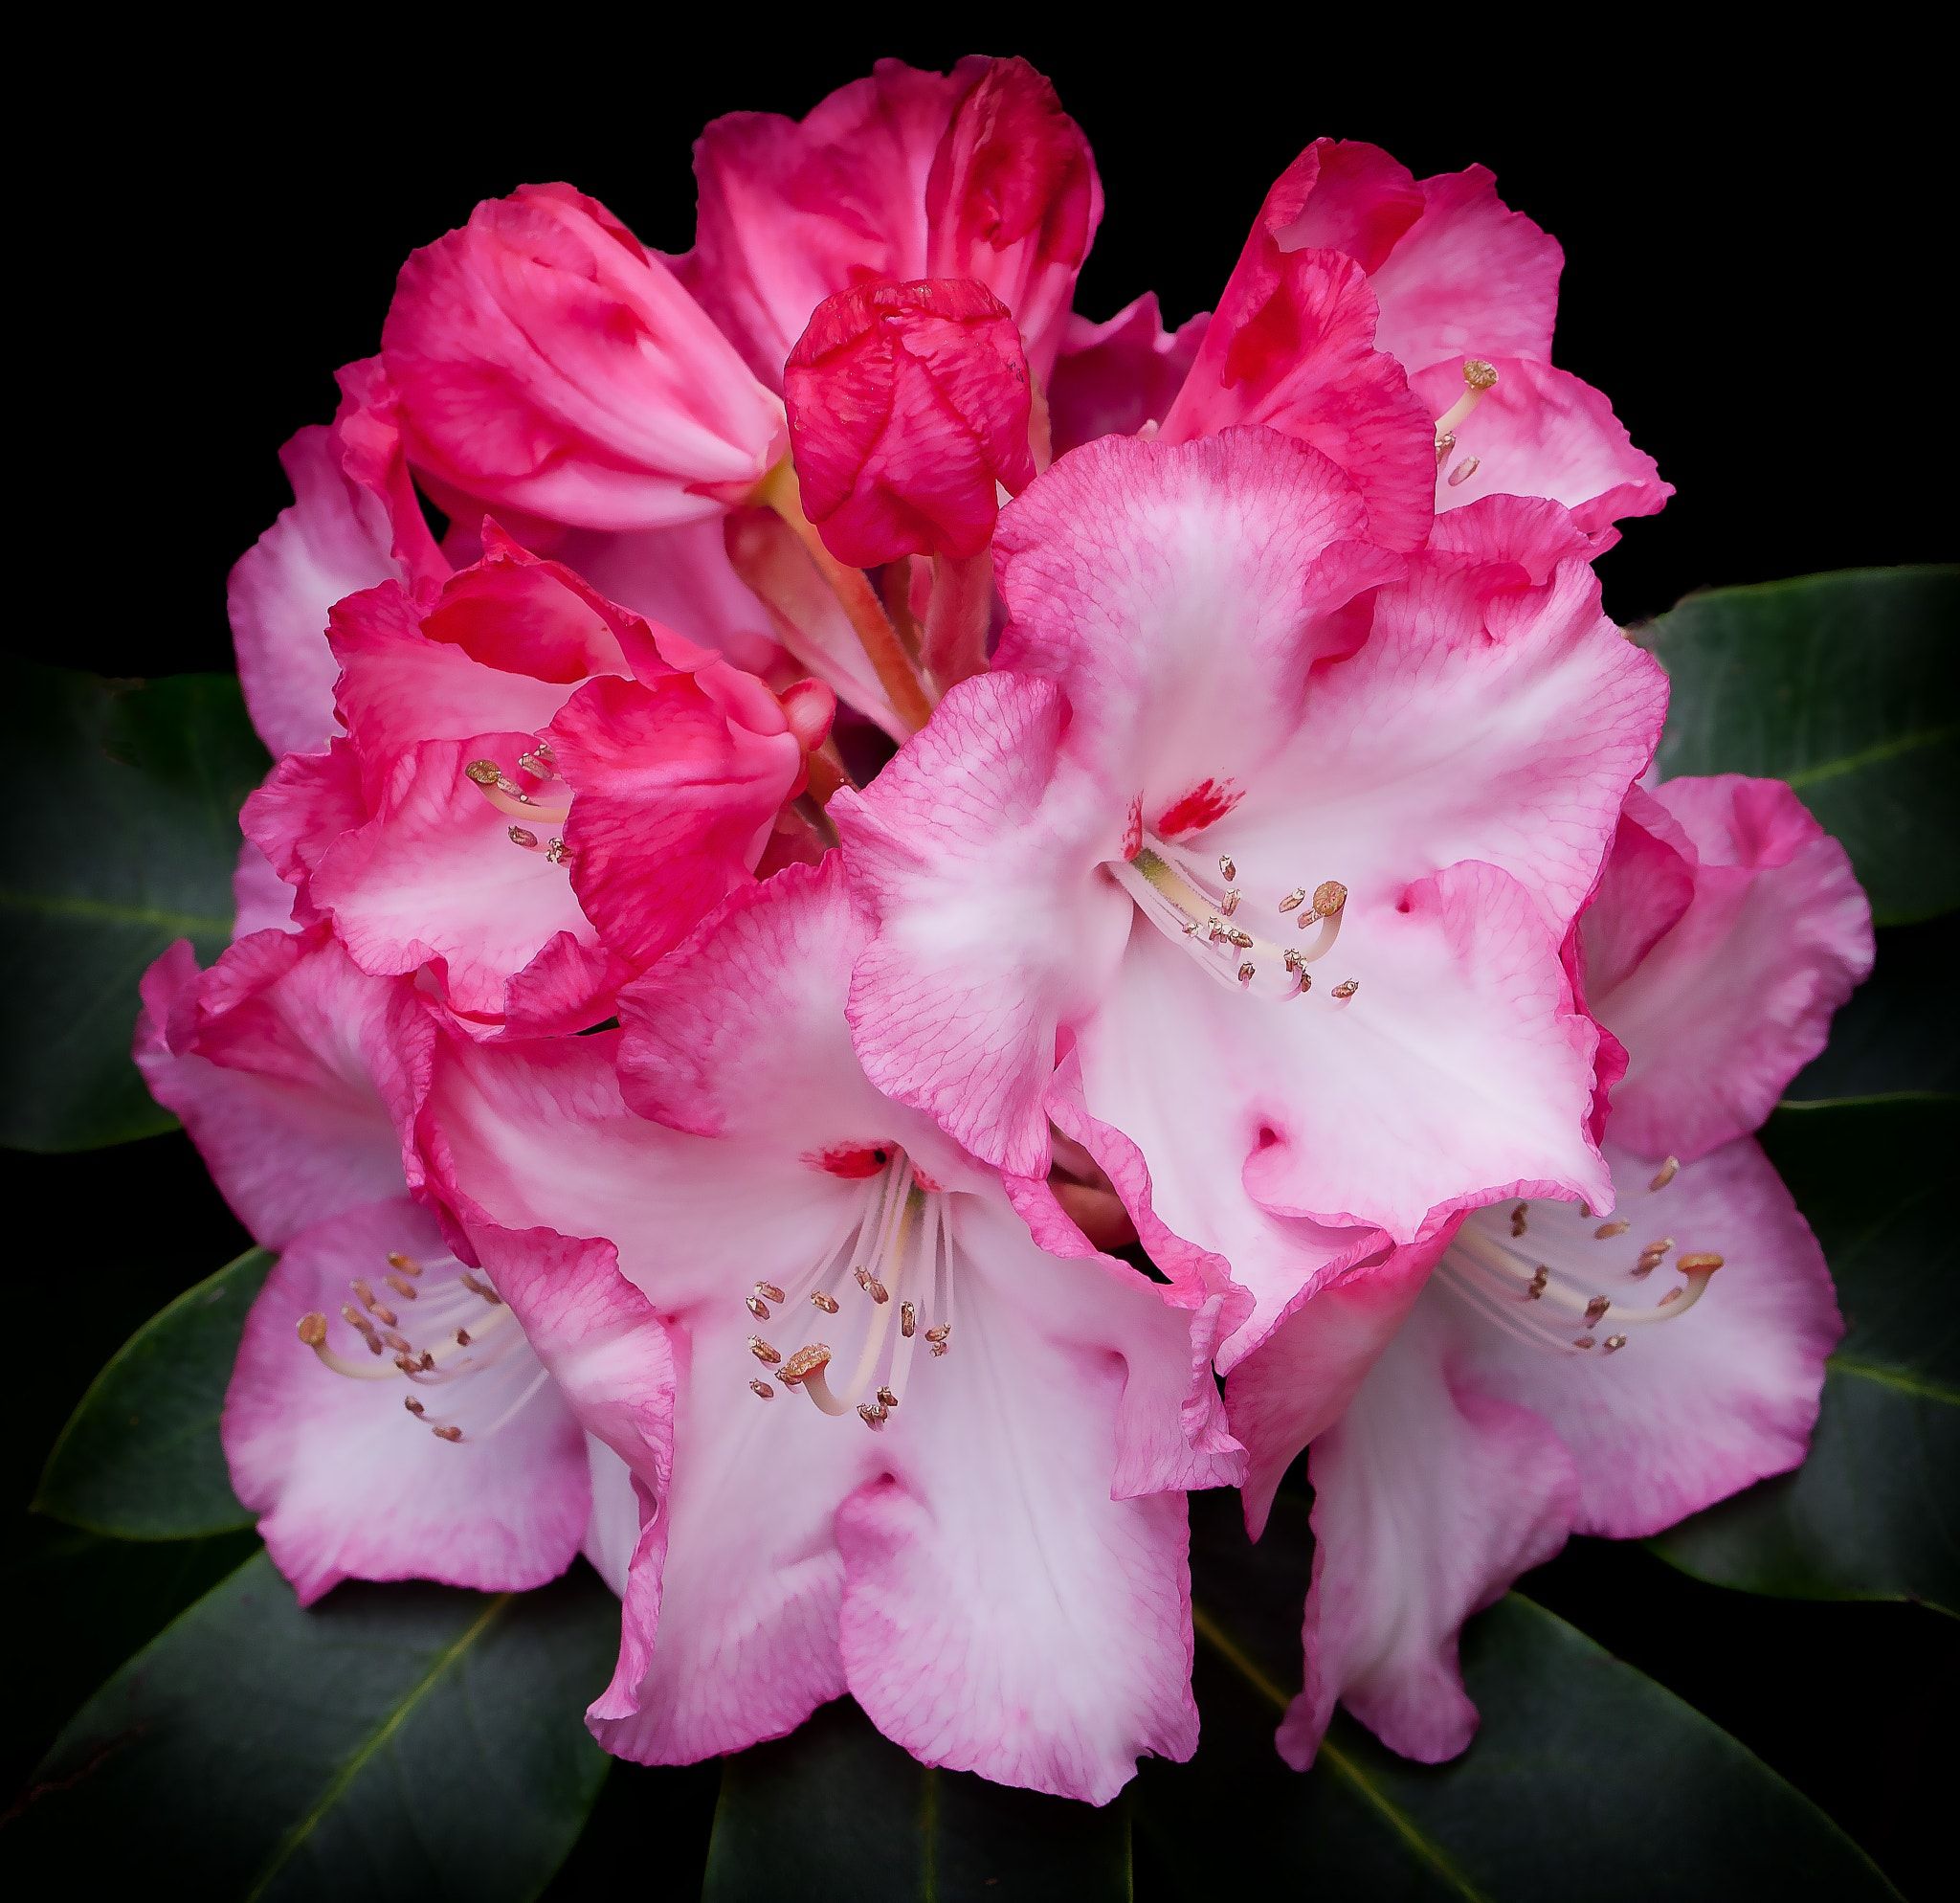 Rhododendron flower - Trying macro lens. | Flower | Pinterest